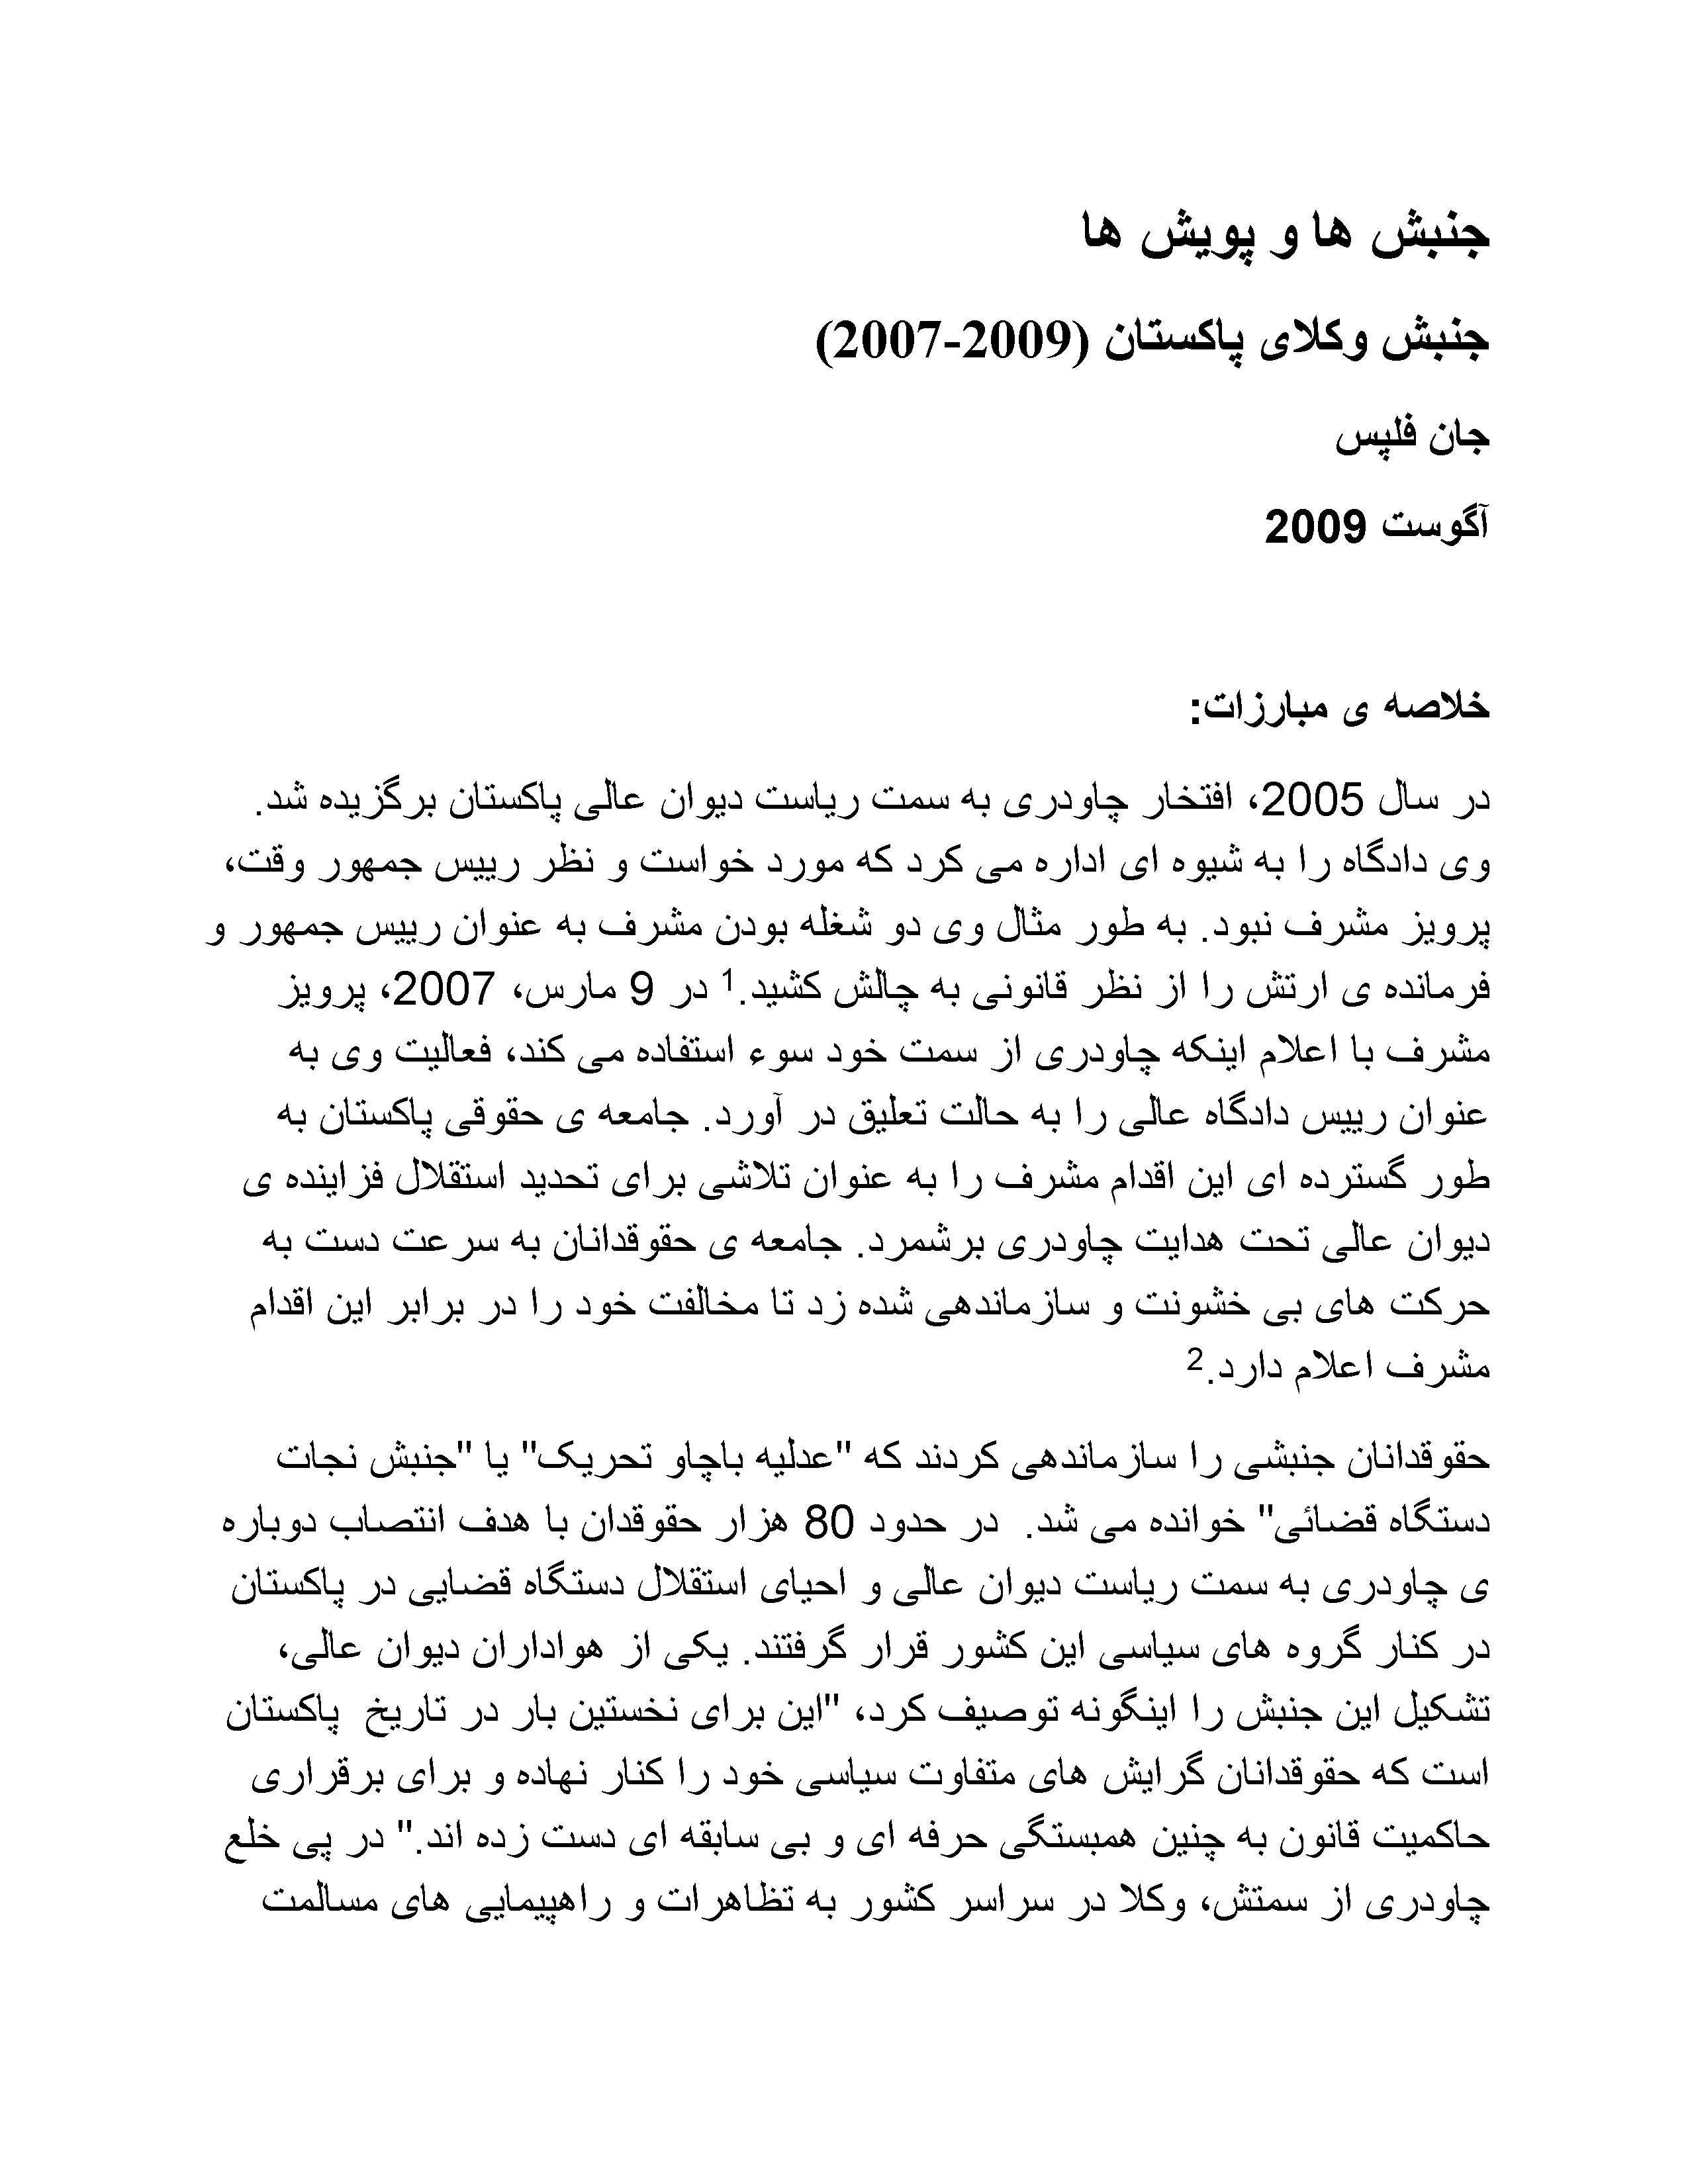 جنبش وکلای پاکستان (2009-2007)